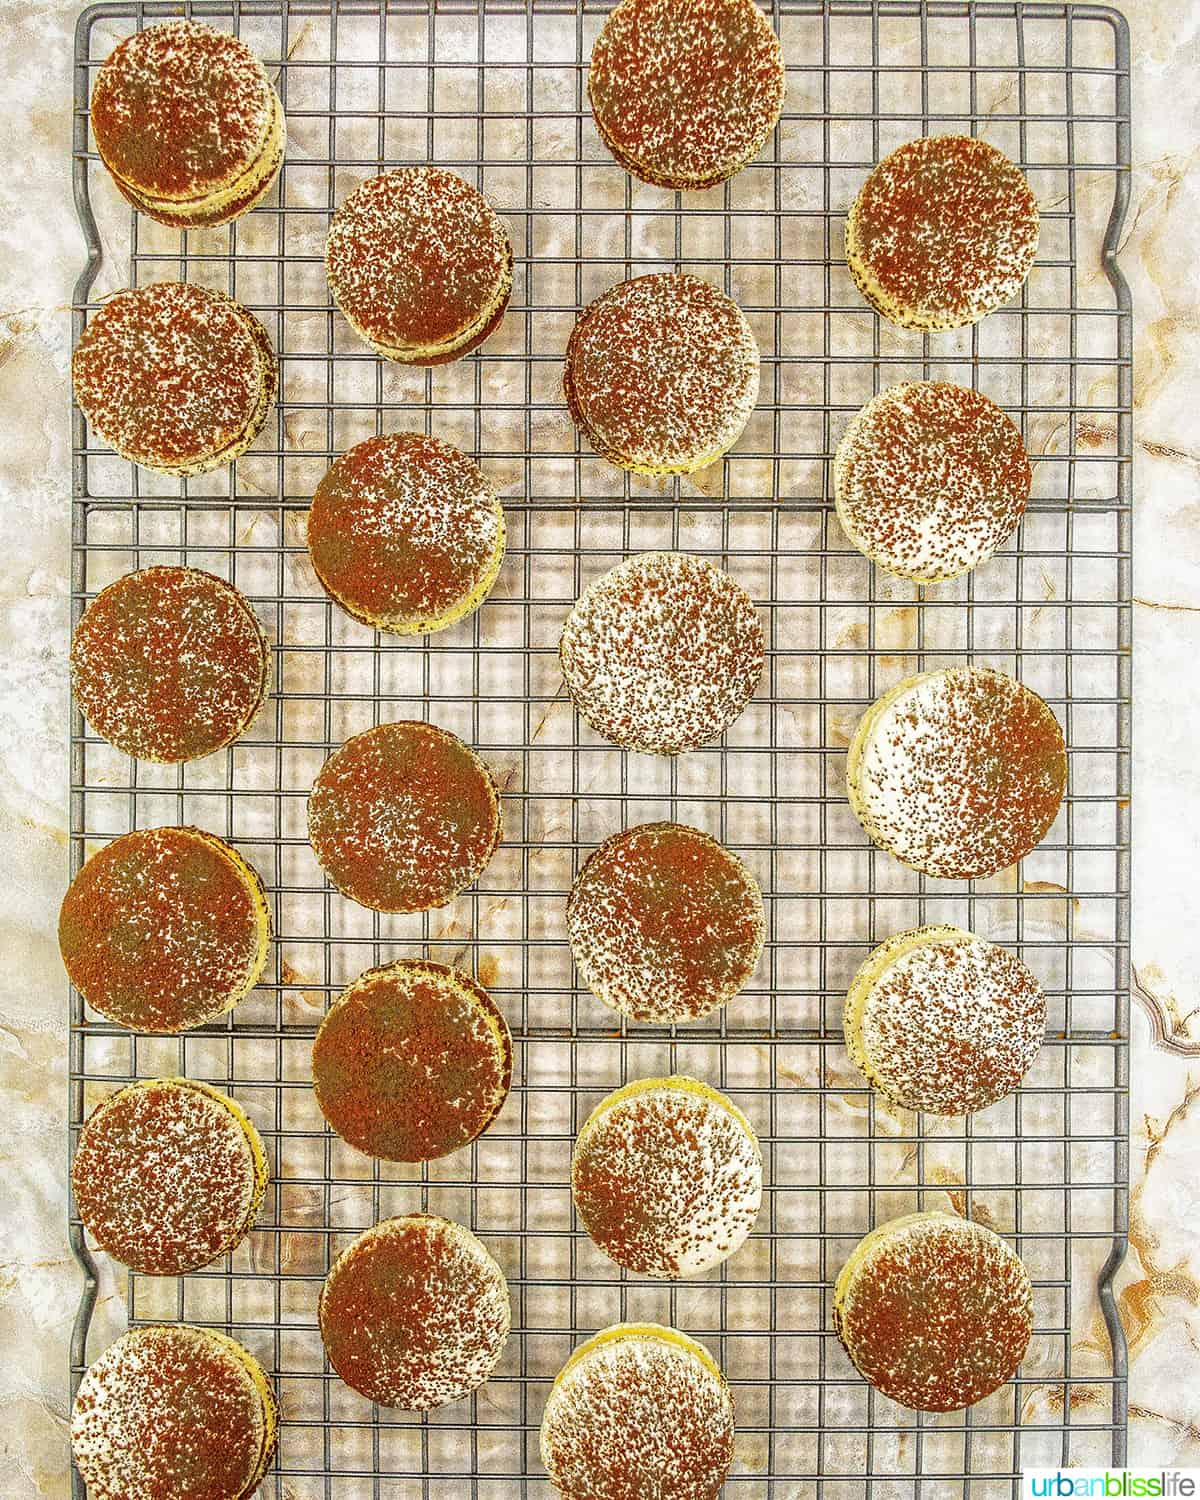 rows of tiramisu macarons on a cooling rack.